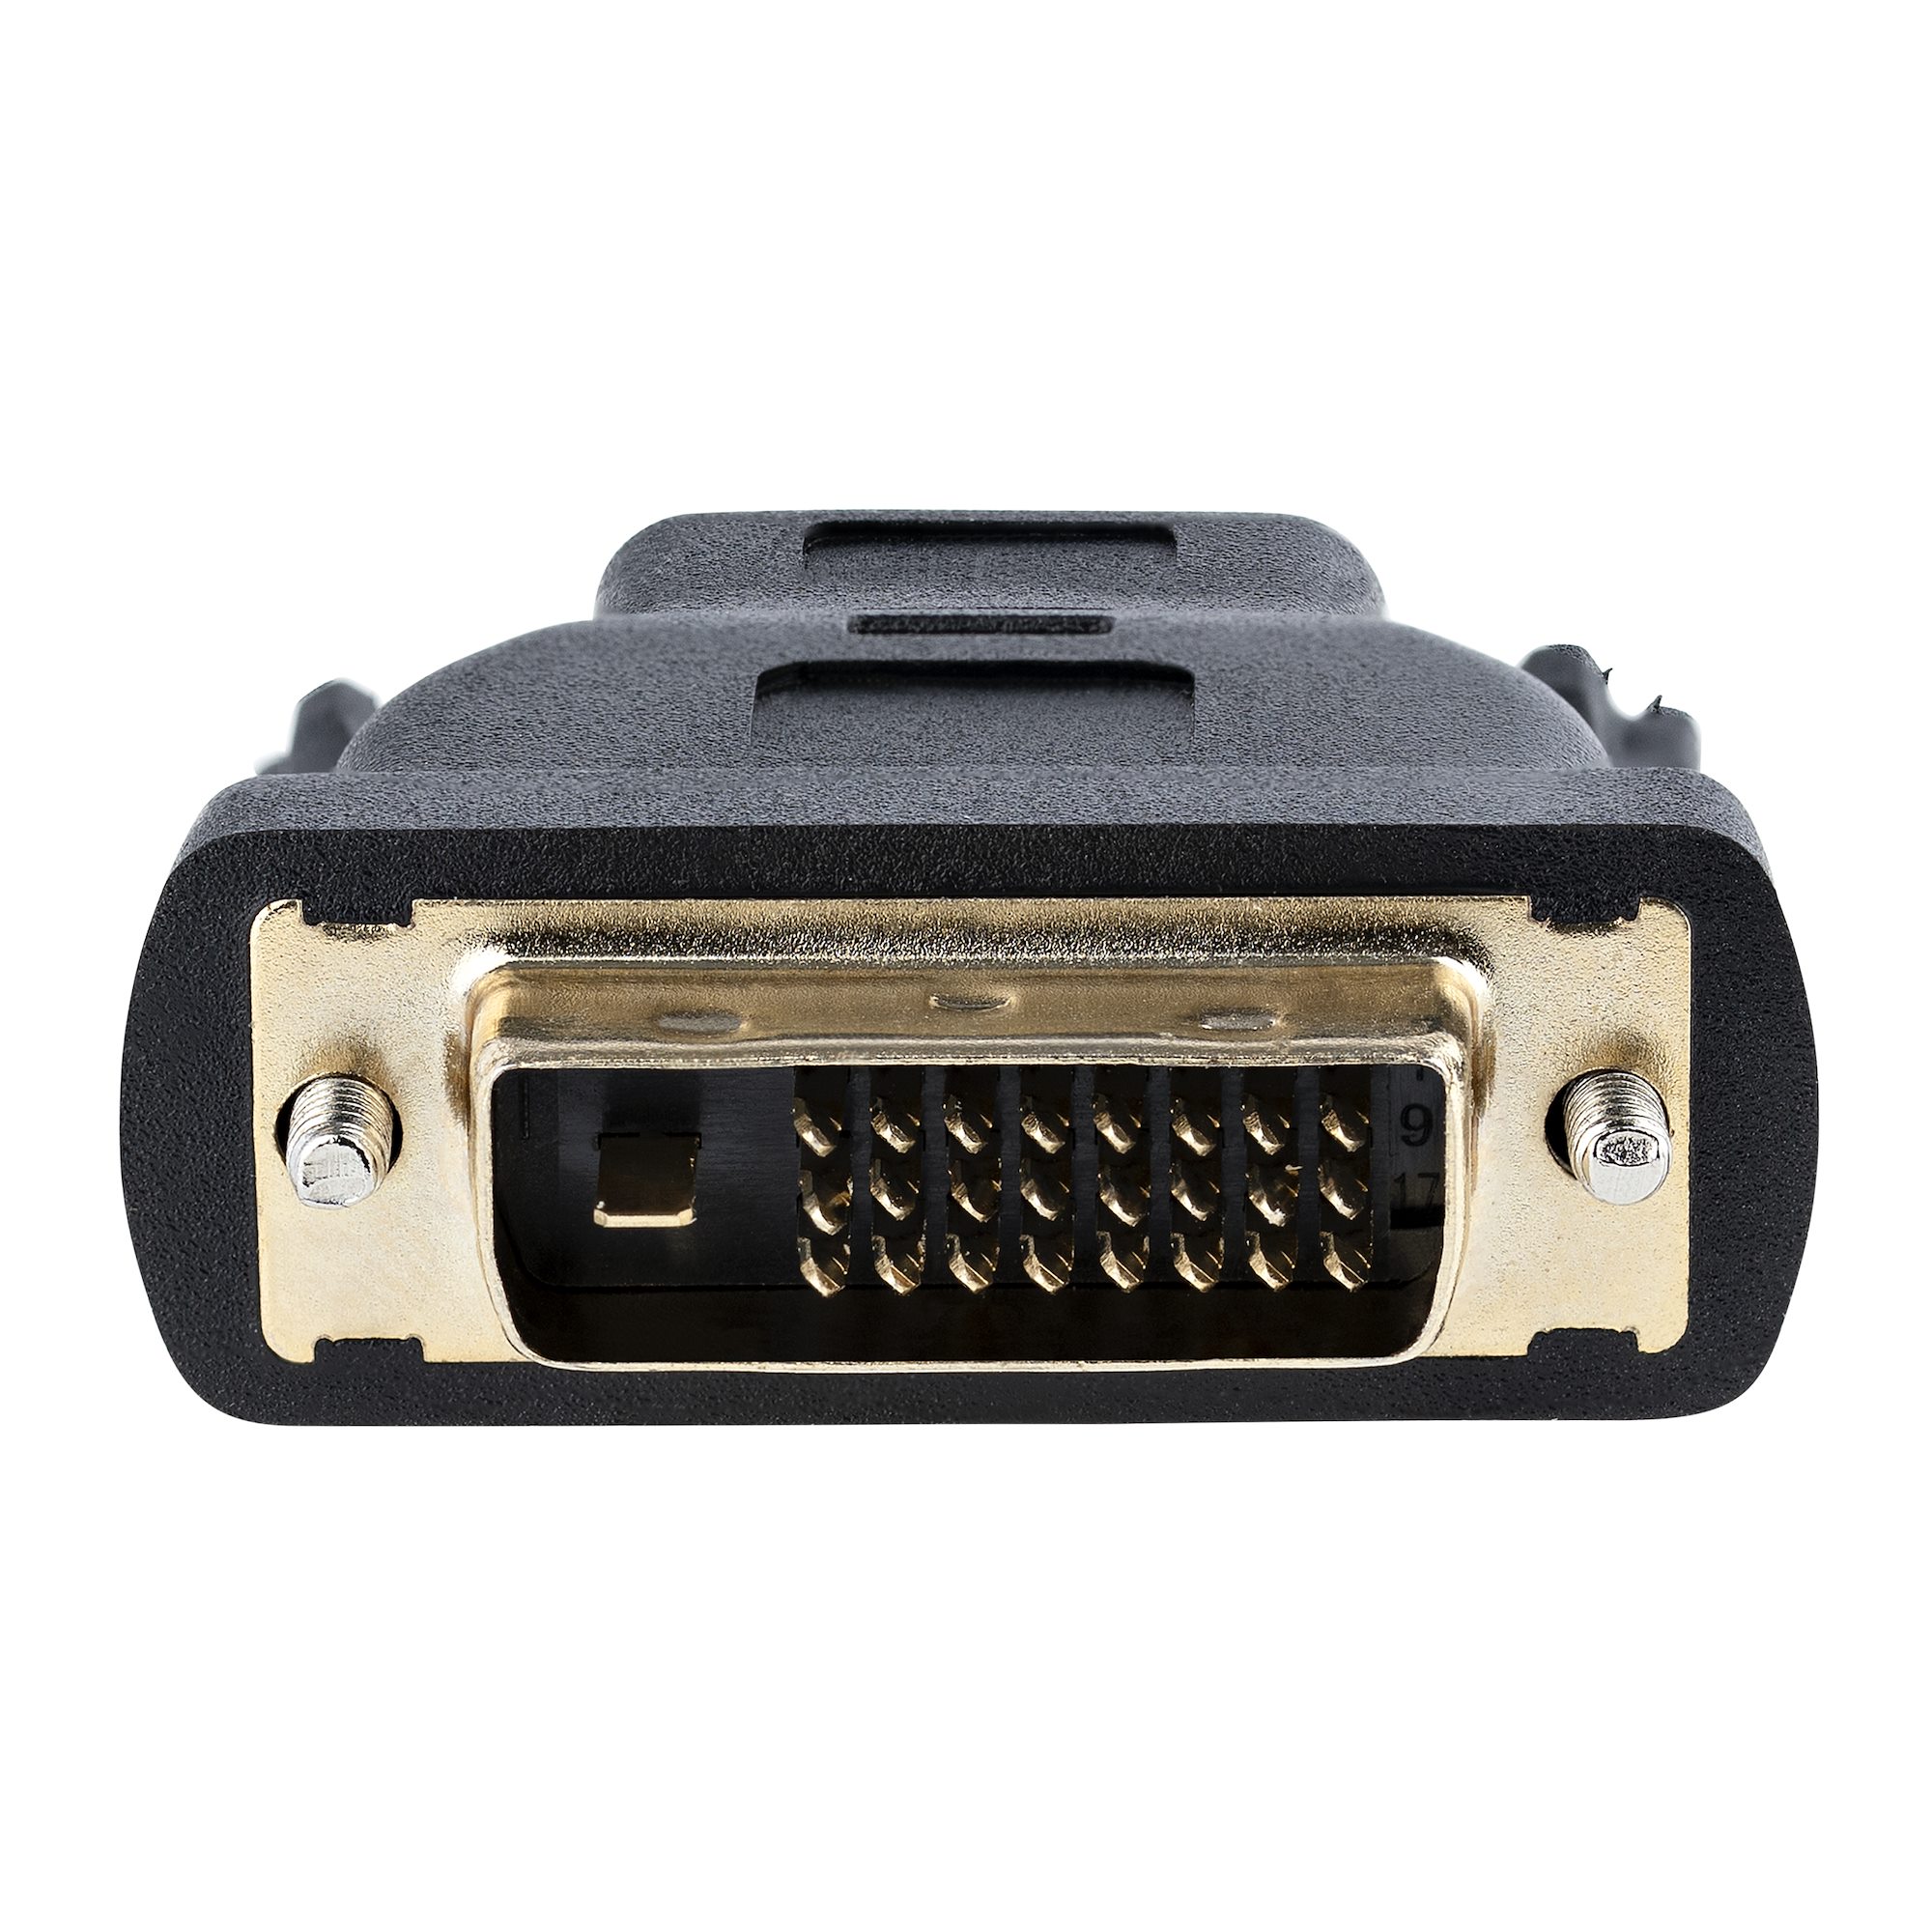 HDMI DVI-D変換ケーブルアダプタ 15.2m オス/オス HDMIDVIMM50｜分配器、切替器 sport-u. com